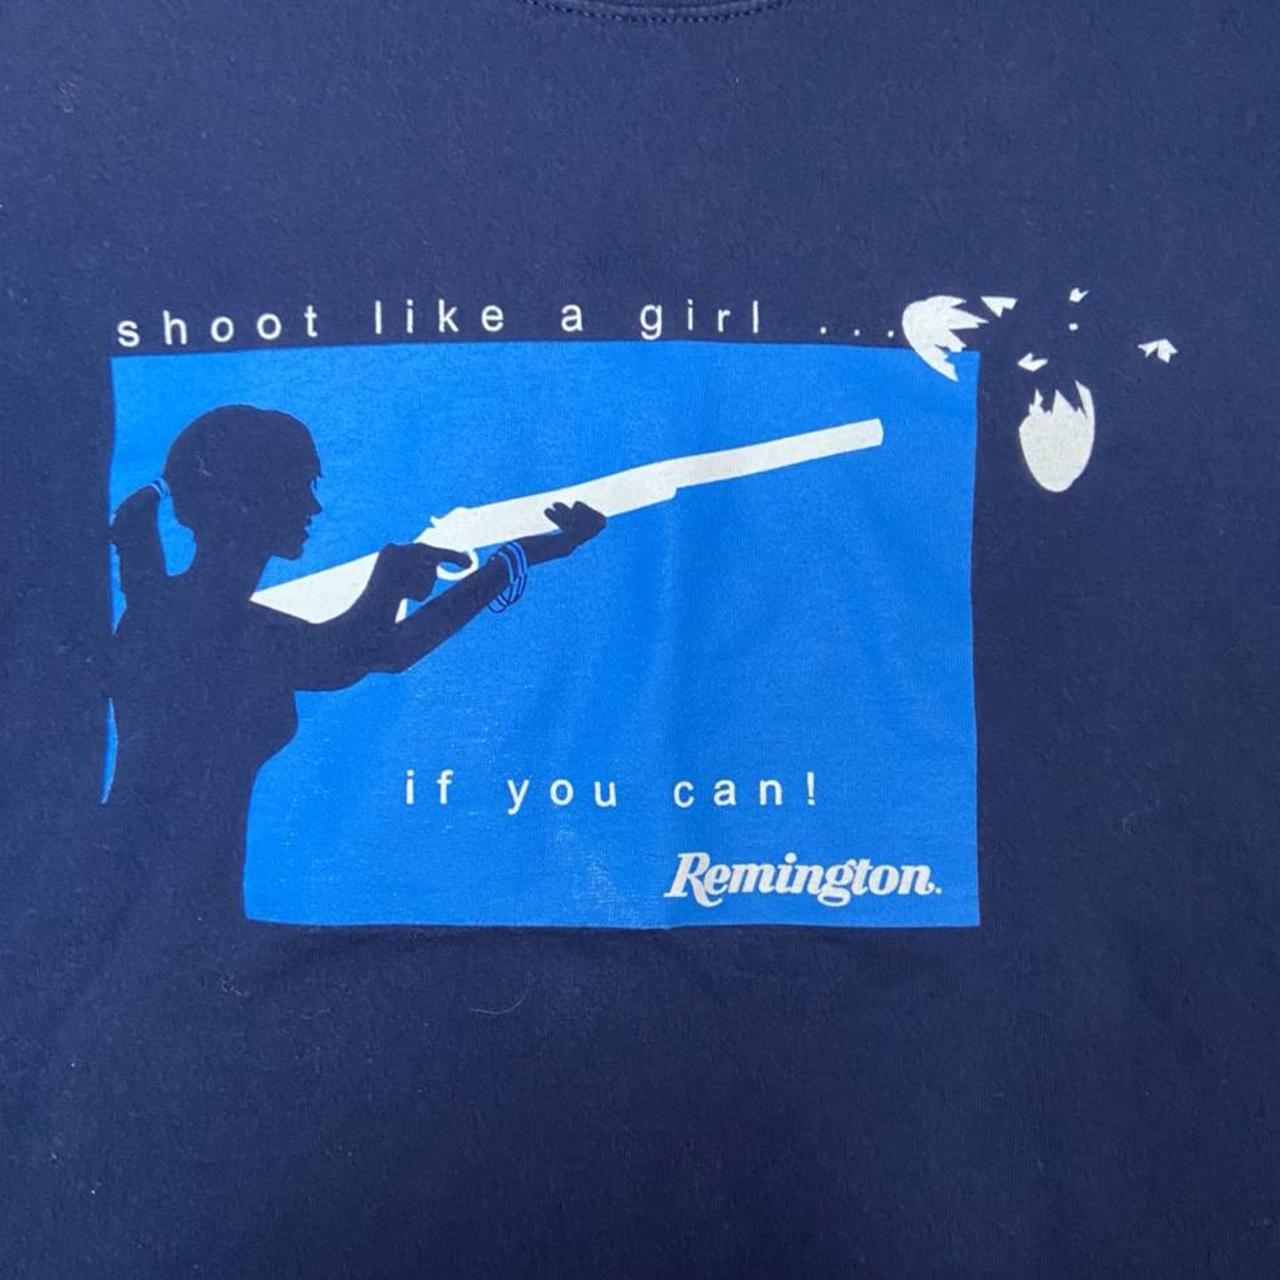 Product Image 3 - Gildan tee shirt 
Remington guns
“Shoot